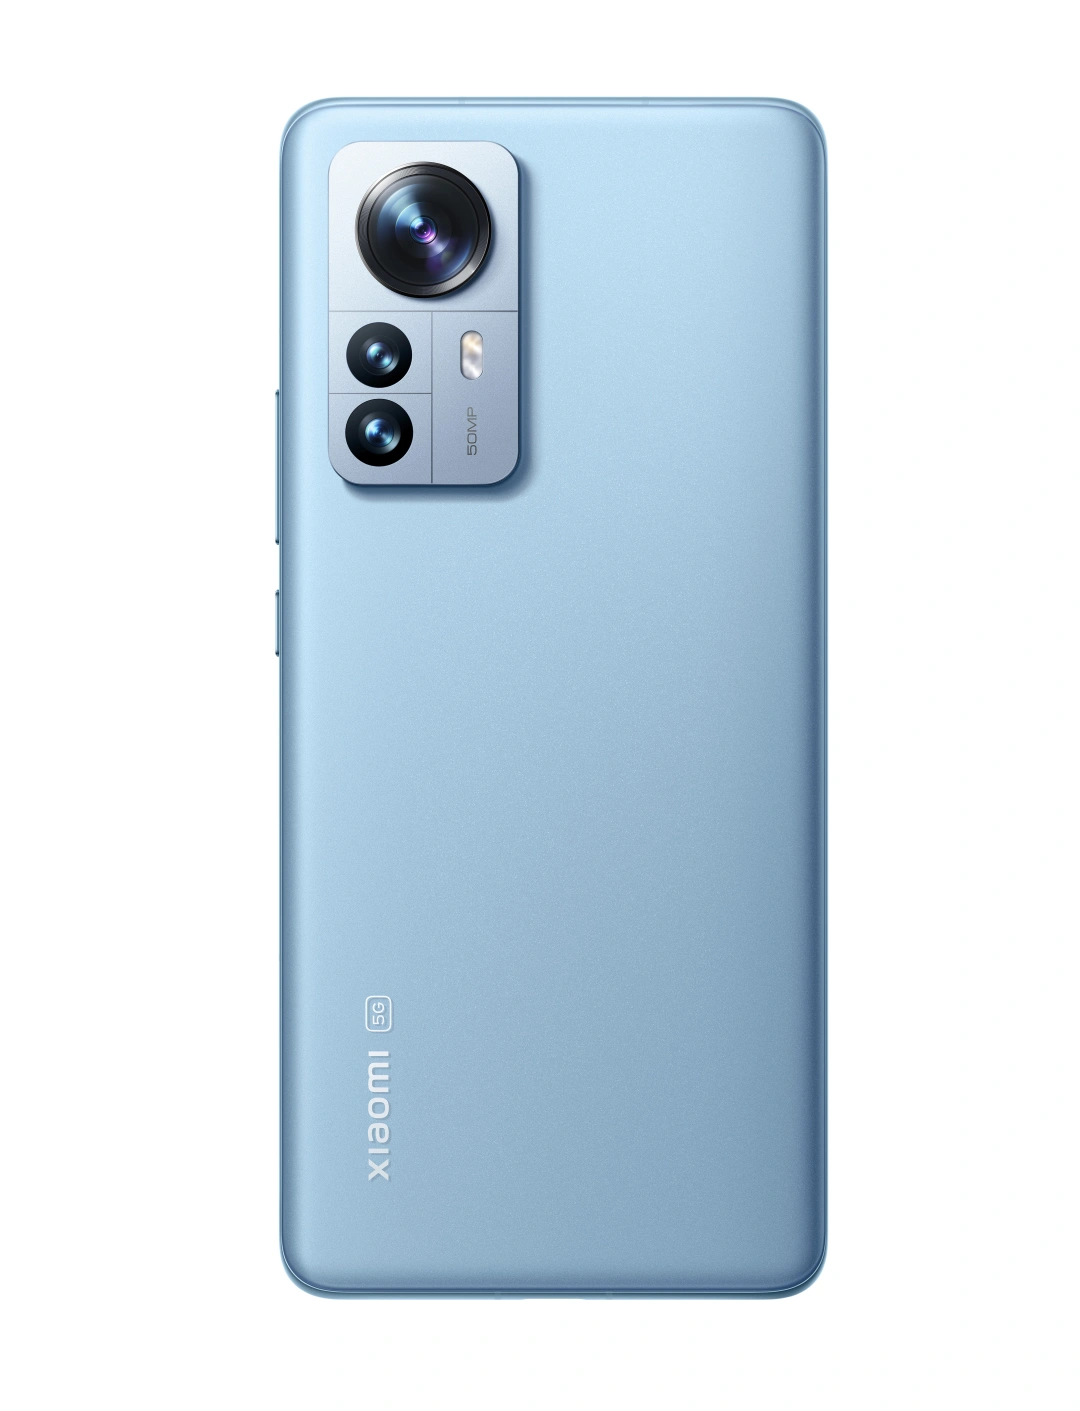 Xiaomi 12 Pro 12/256 GB, Blue